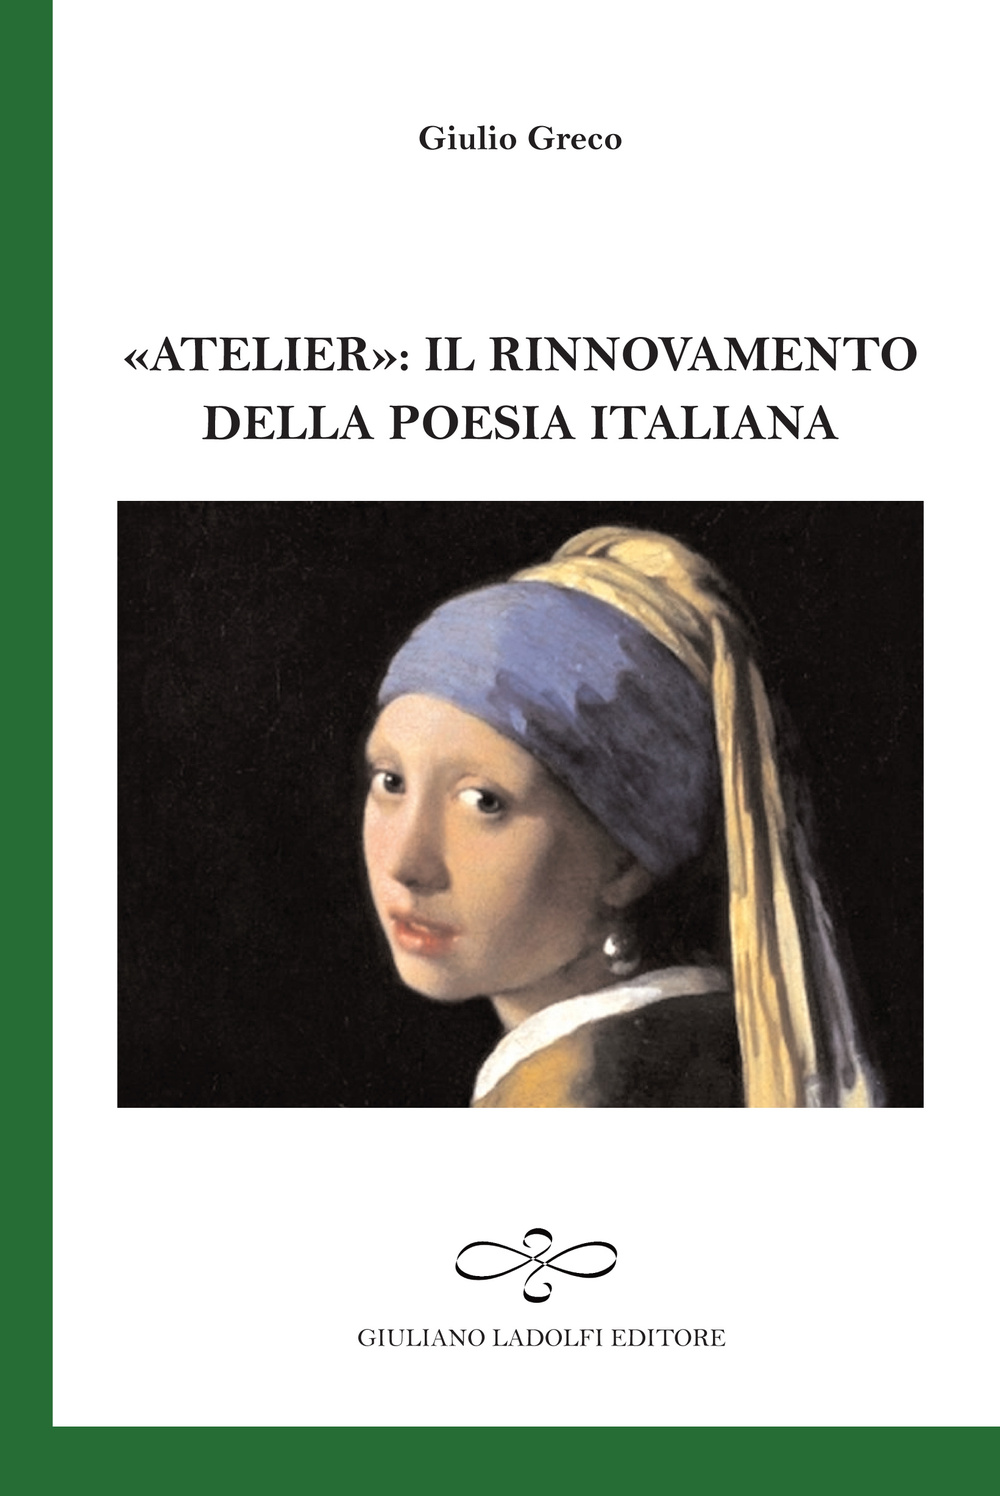 «Atelier». Il rinnovamento della poesia italiana